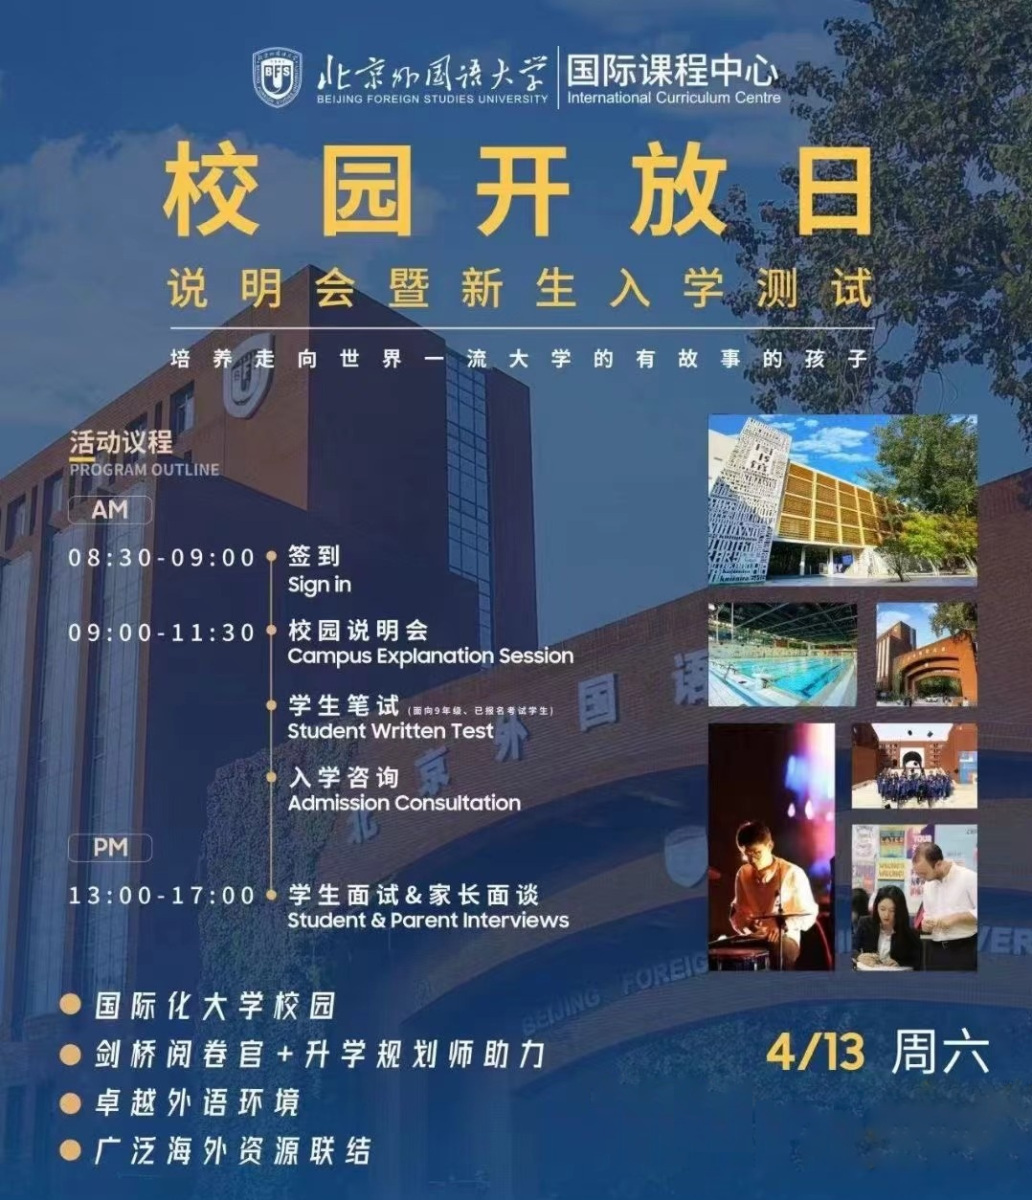 4月13日，北京外国语大学国际课程中心开放日说明会暨新生入学考试来袭